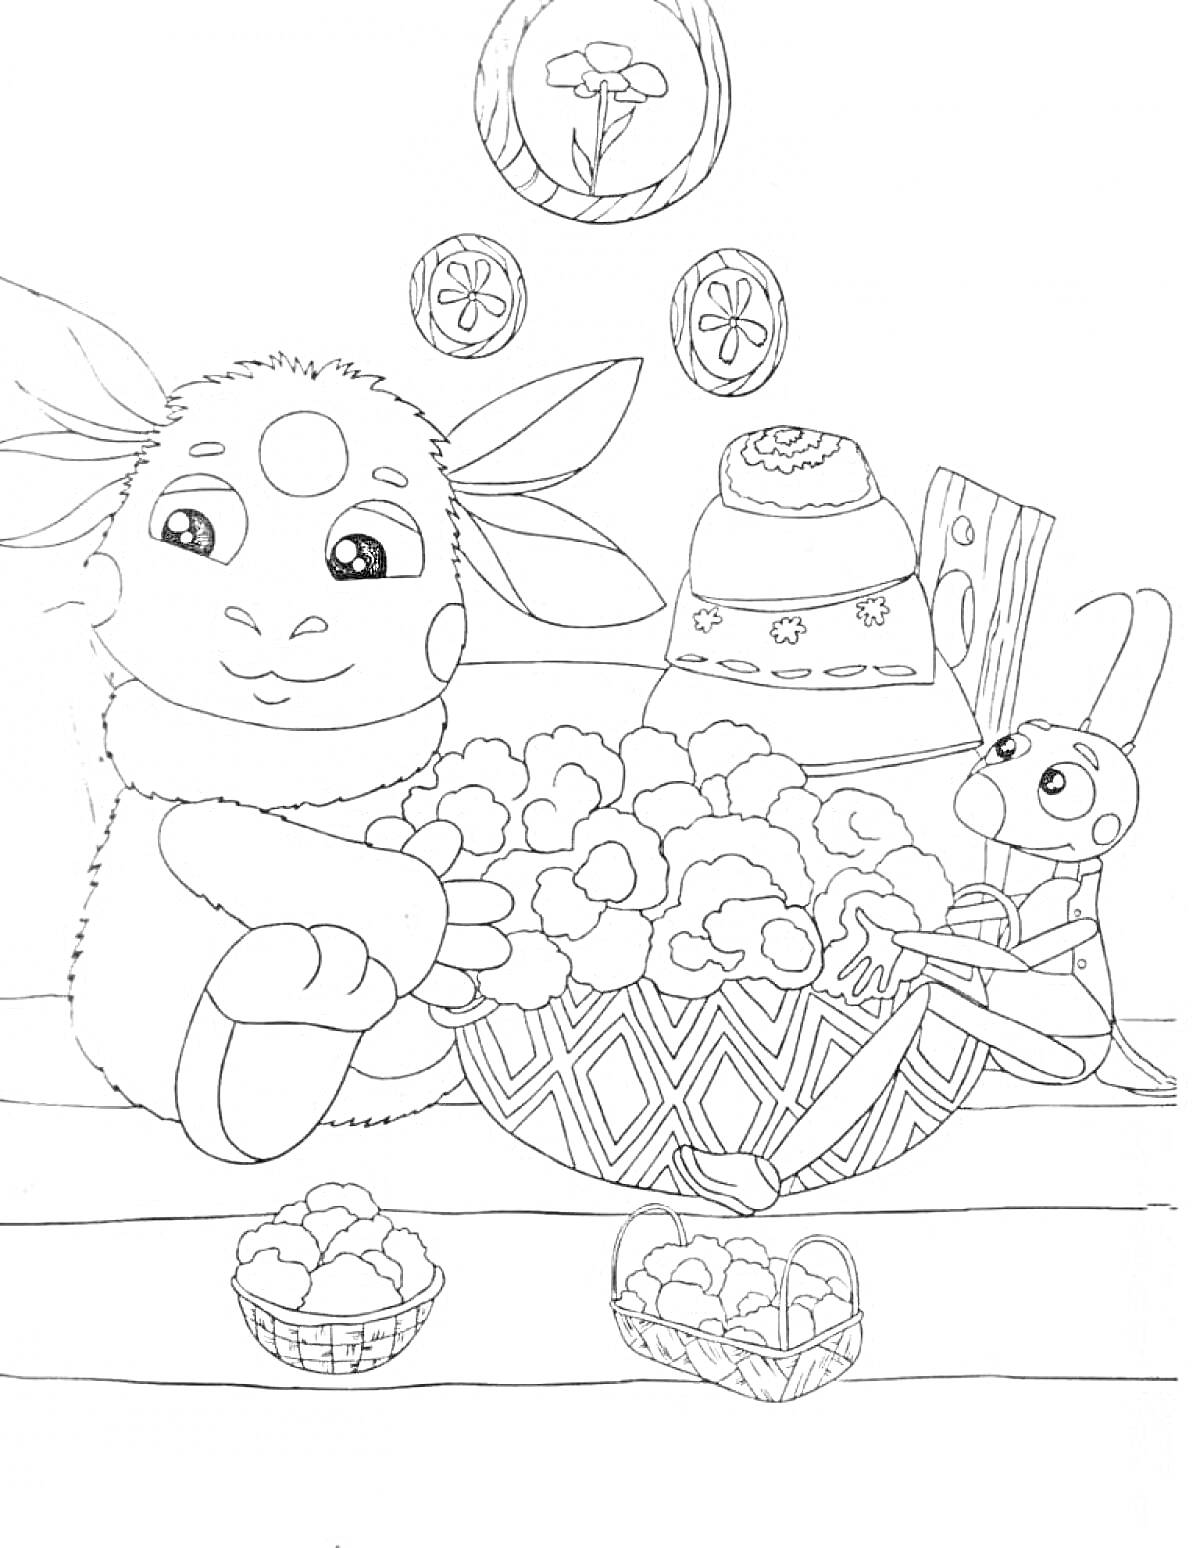 Раскраска Лунтик и кузнечик за приготовлением еды, в большой корзине цветочная капуста, на столе маленькие корзинки с цветочной капустой, на заднем плане картина с цветком, два круглых декора с цветами, и горшок под стеной